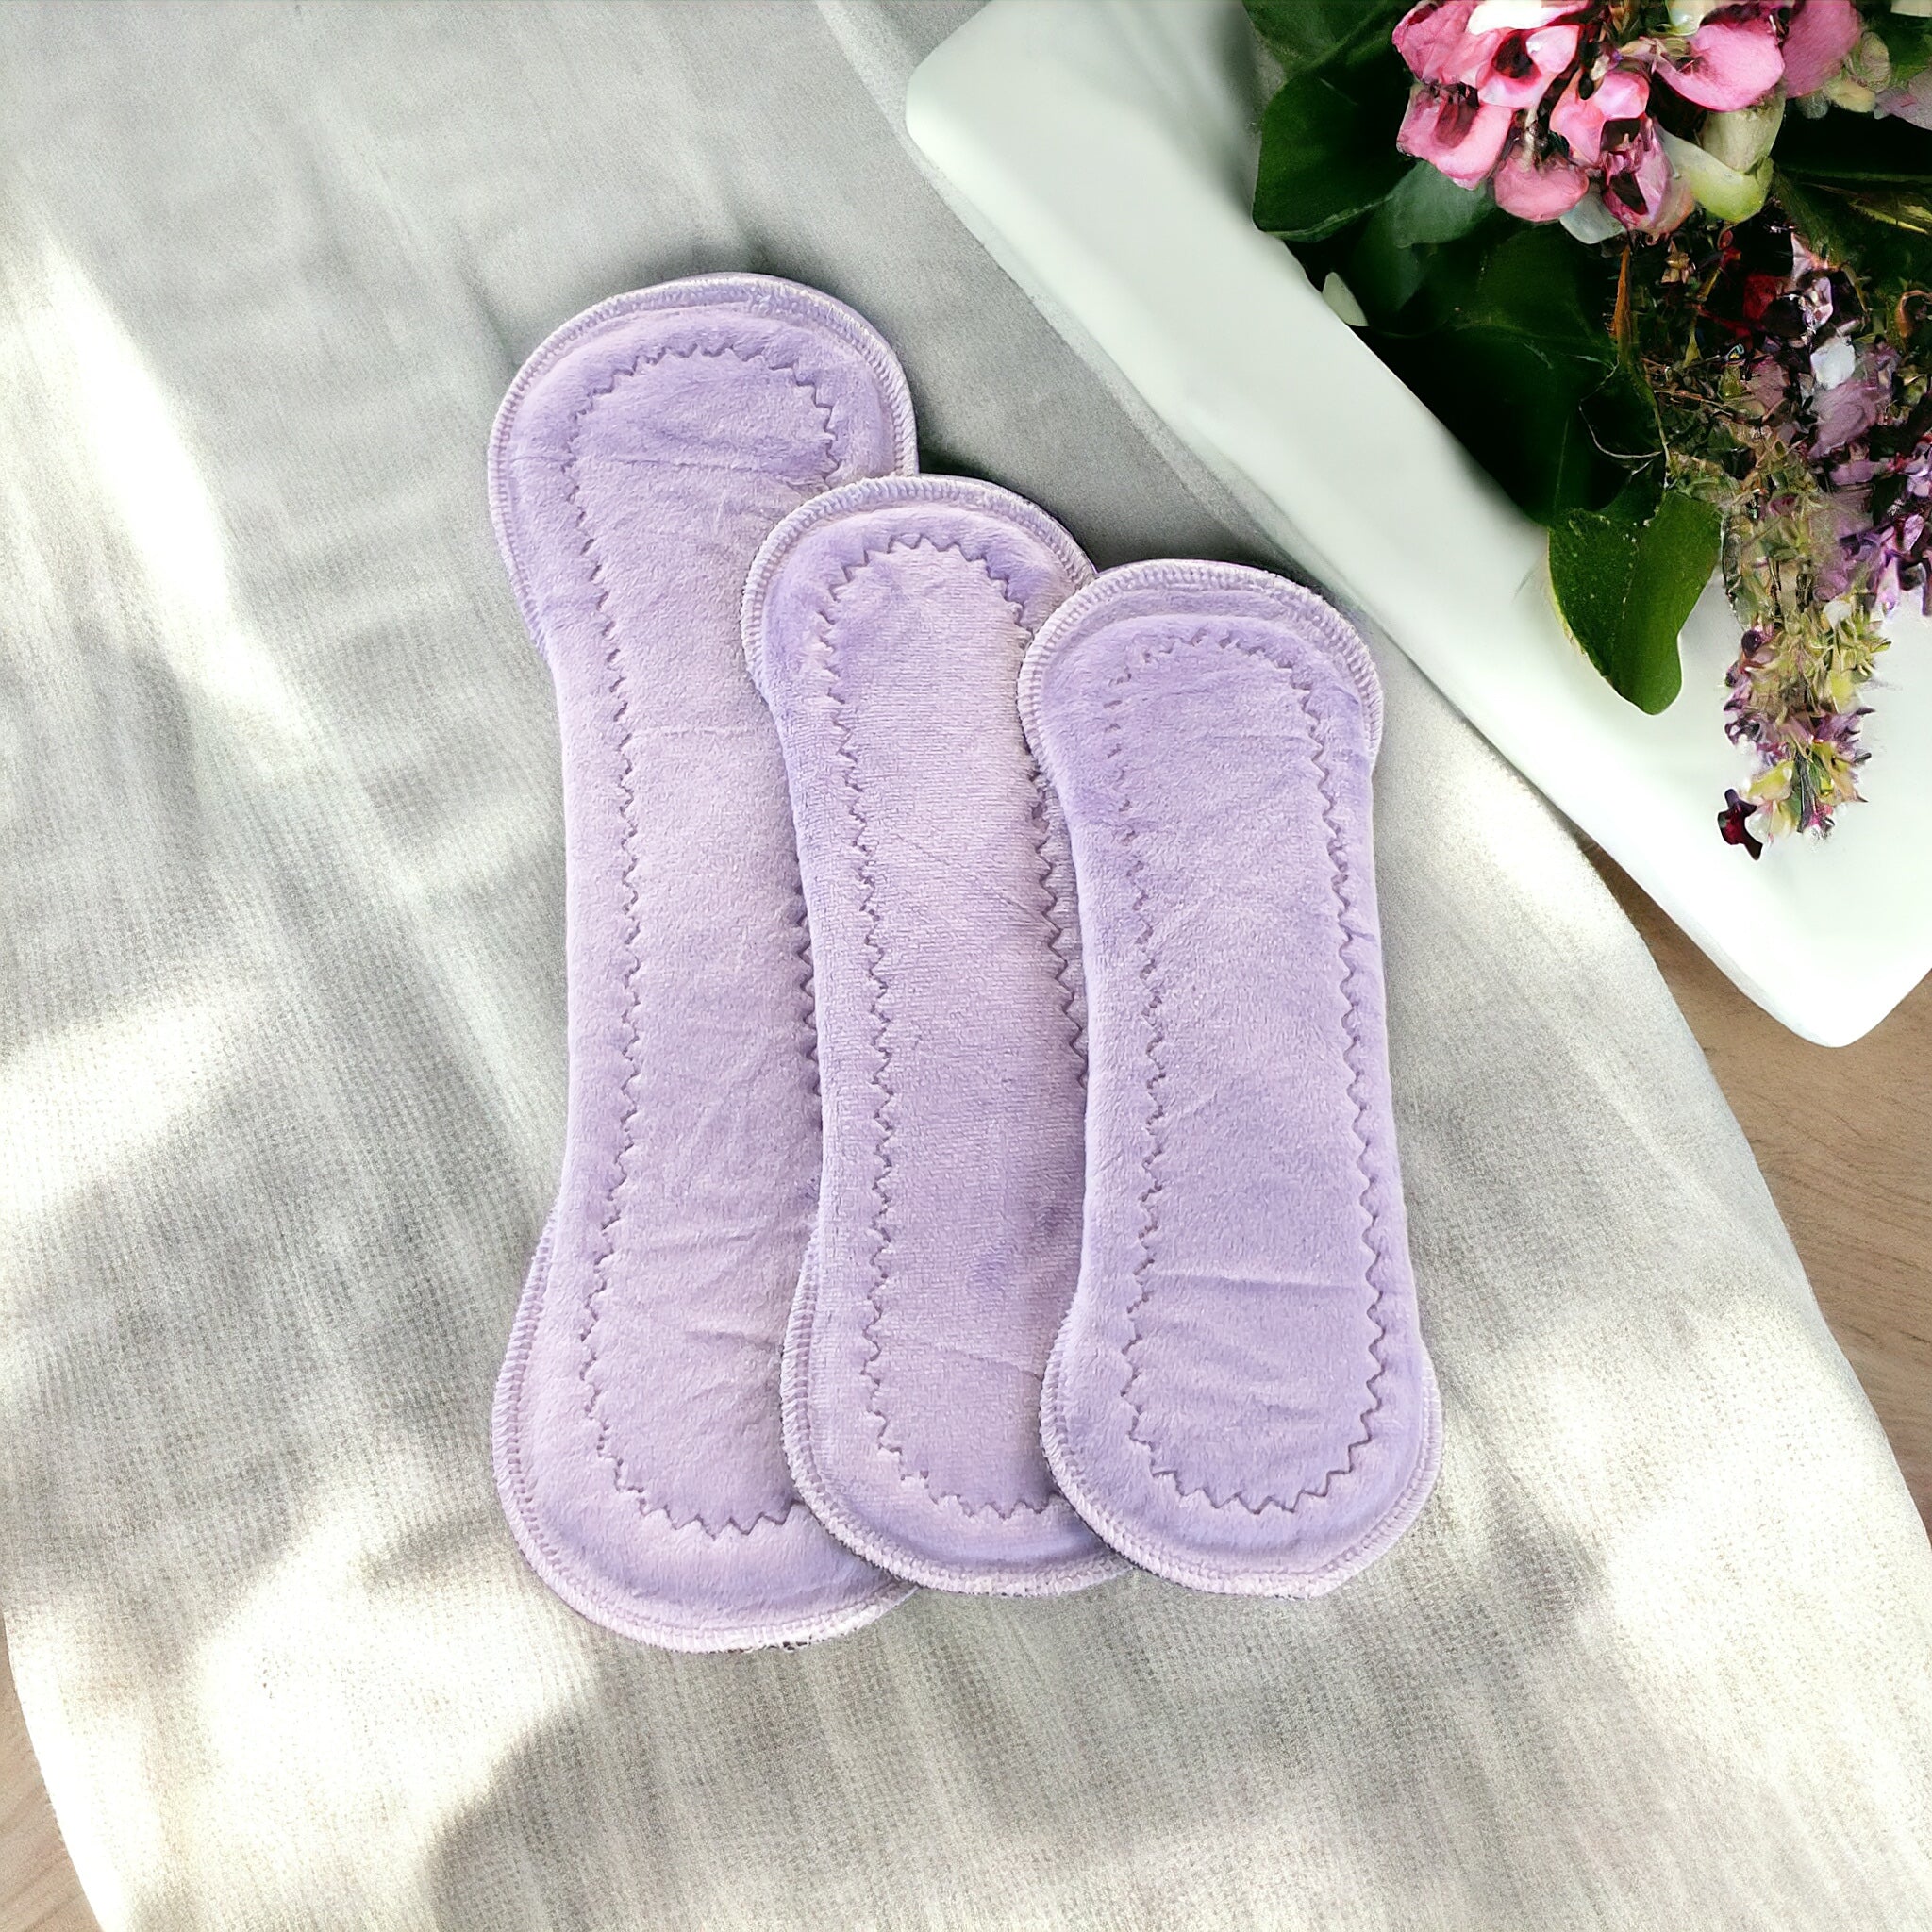 Pack prueba 3 toallas lila minky